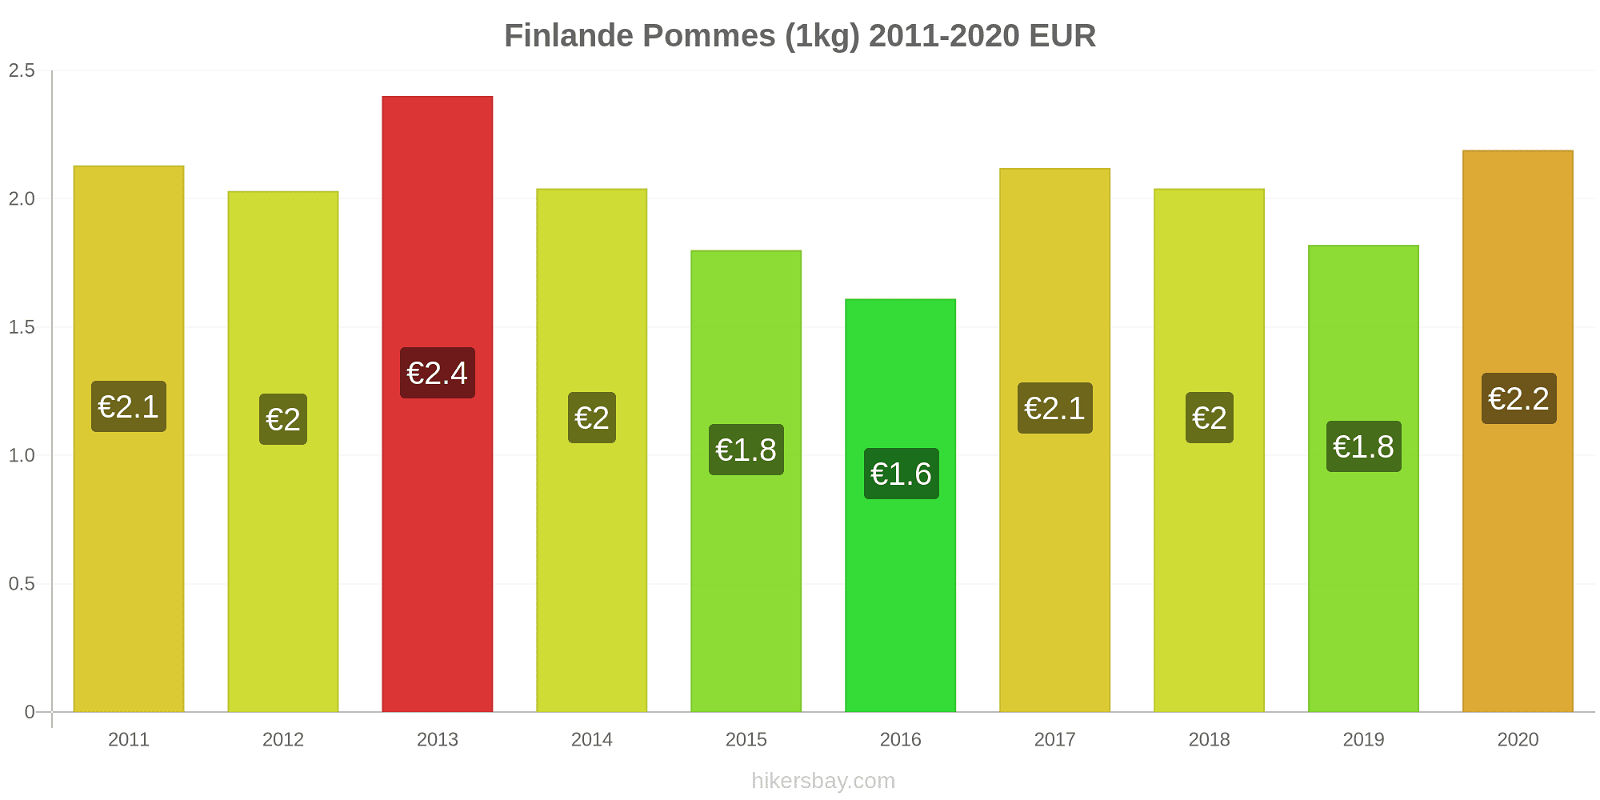 Finlande changements de prix Pommes (1kg) hikersbay.com